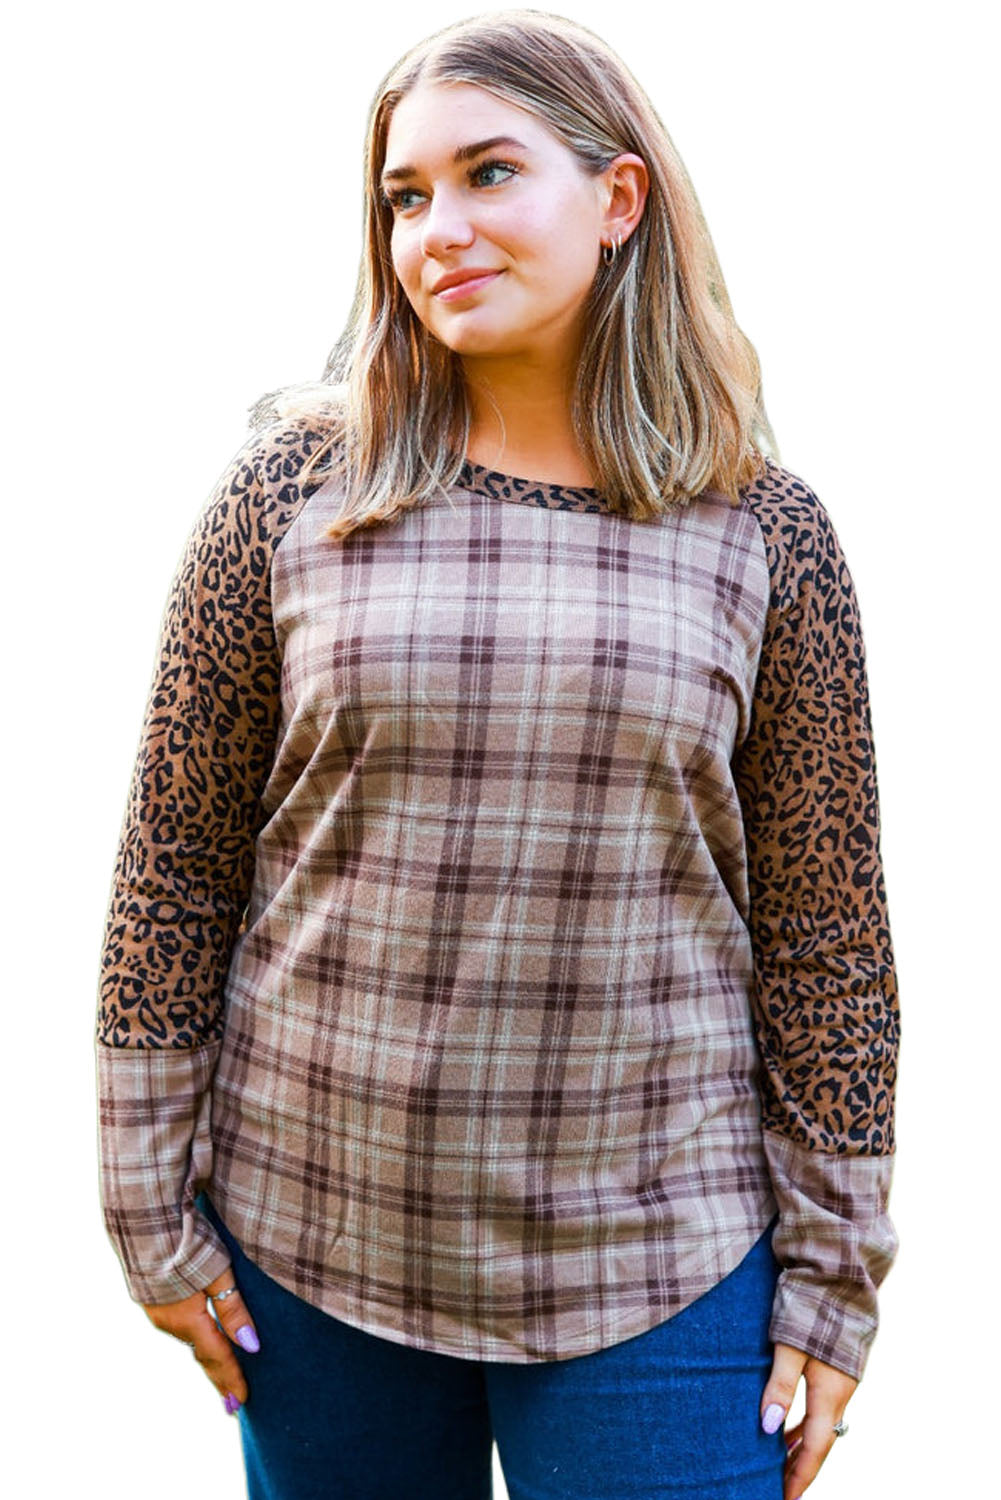 Karirana majica s leopard raglan rukavima u boji kestena